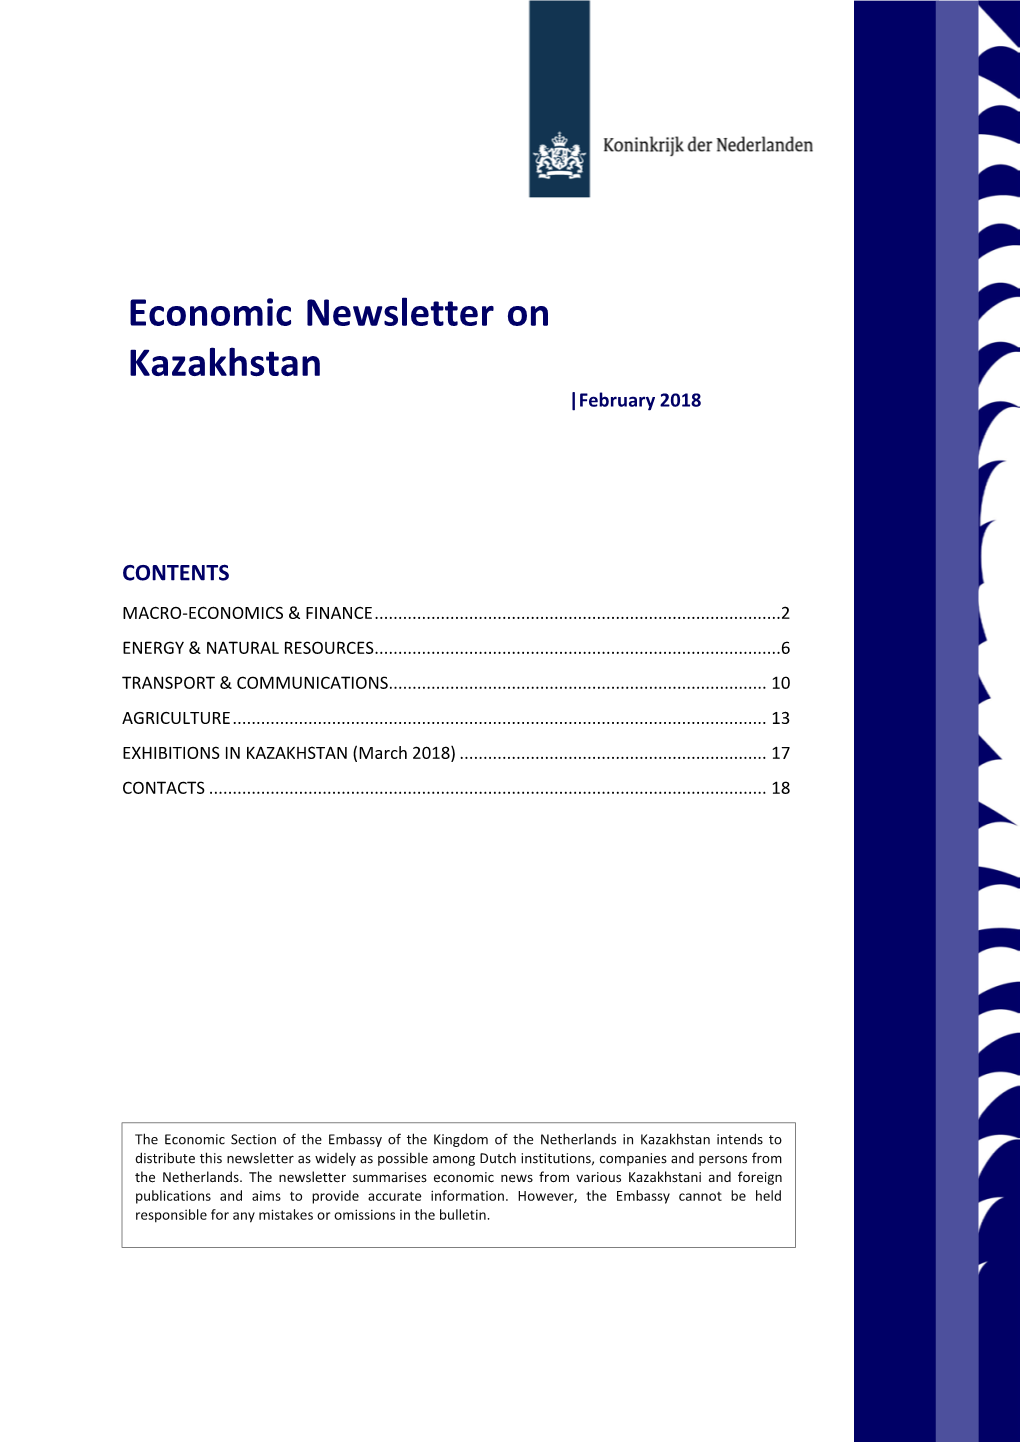 Economic Newsletter on Kazakhstan |February 2018